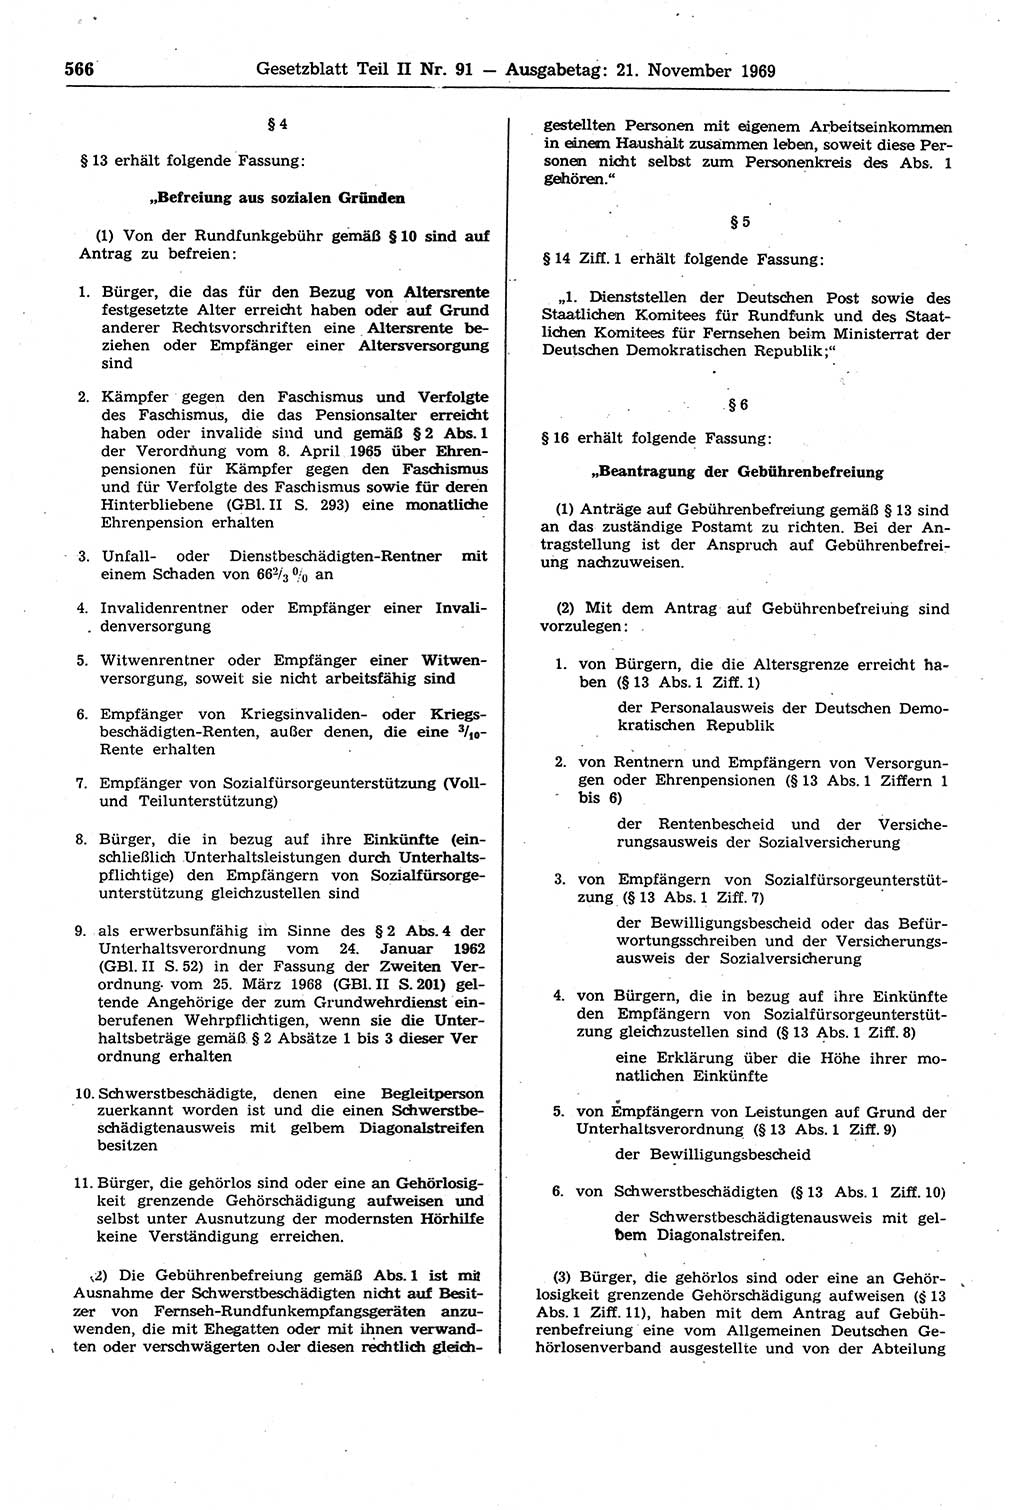 Gesetzblatt (GBl.) der Deutschen Demokratischen Republik (DDR) Teil ⅠⅠ 1969, Seite 566 (GBl. DDR ⅠⅠ 1969, S. 566)